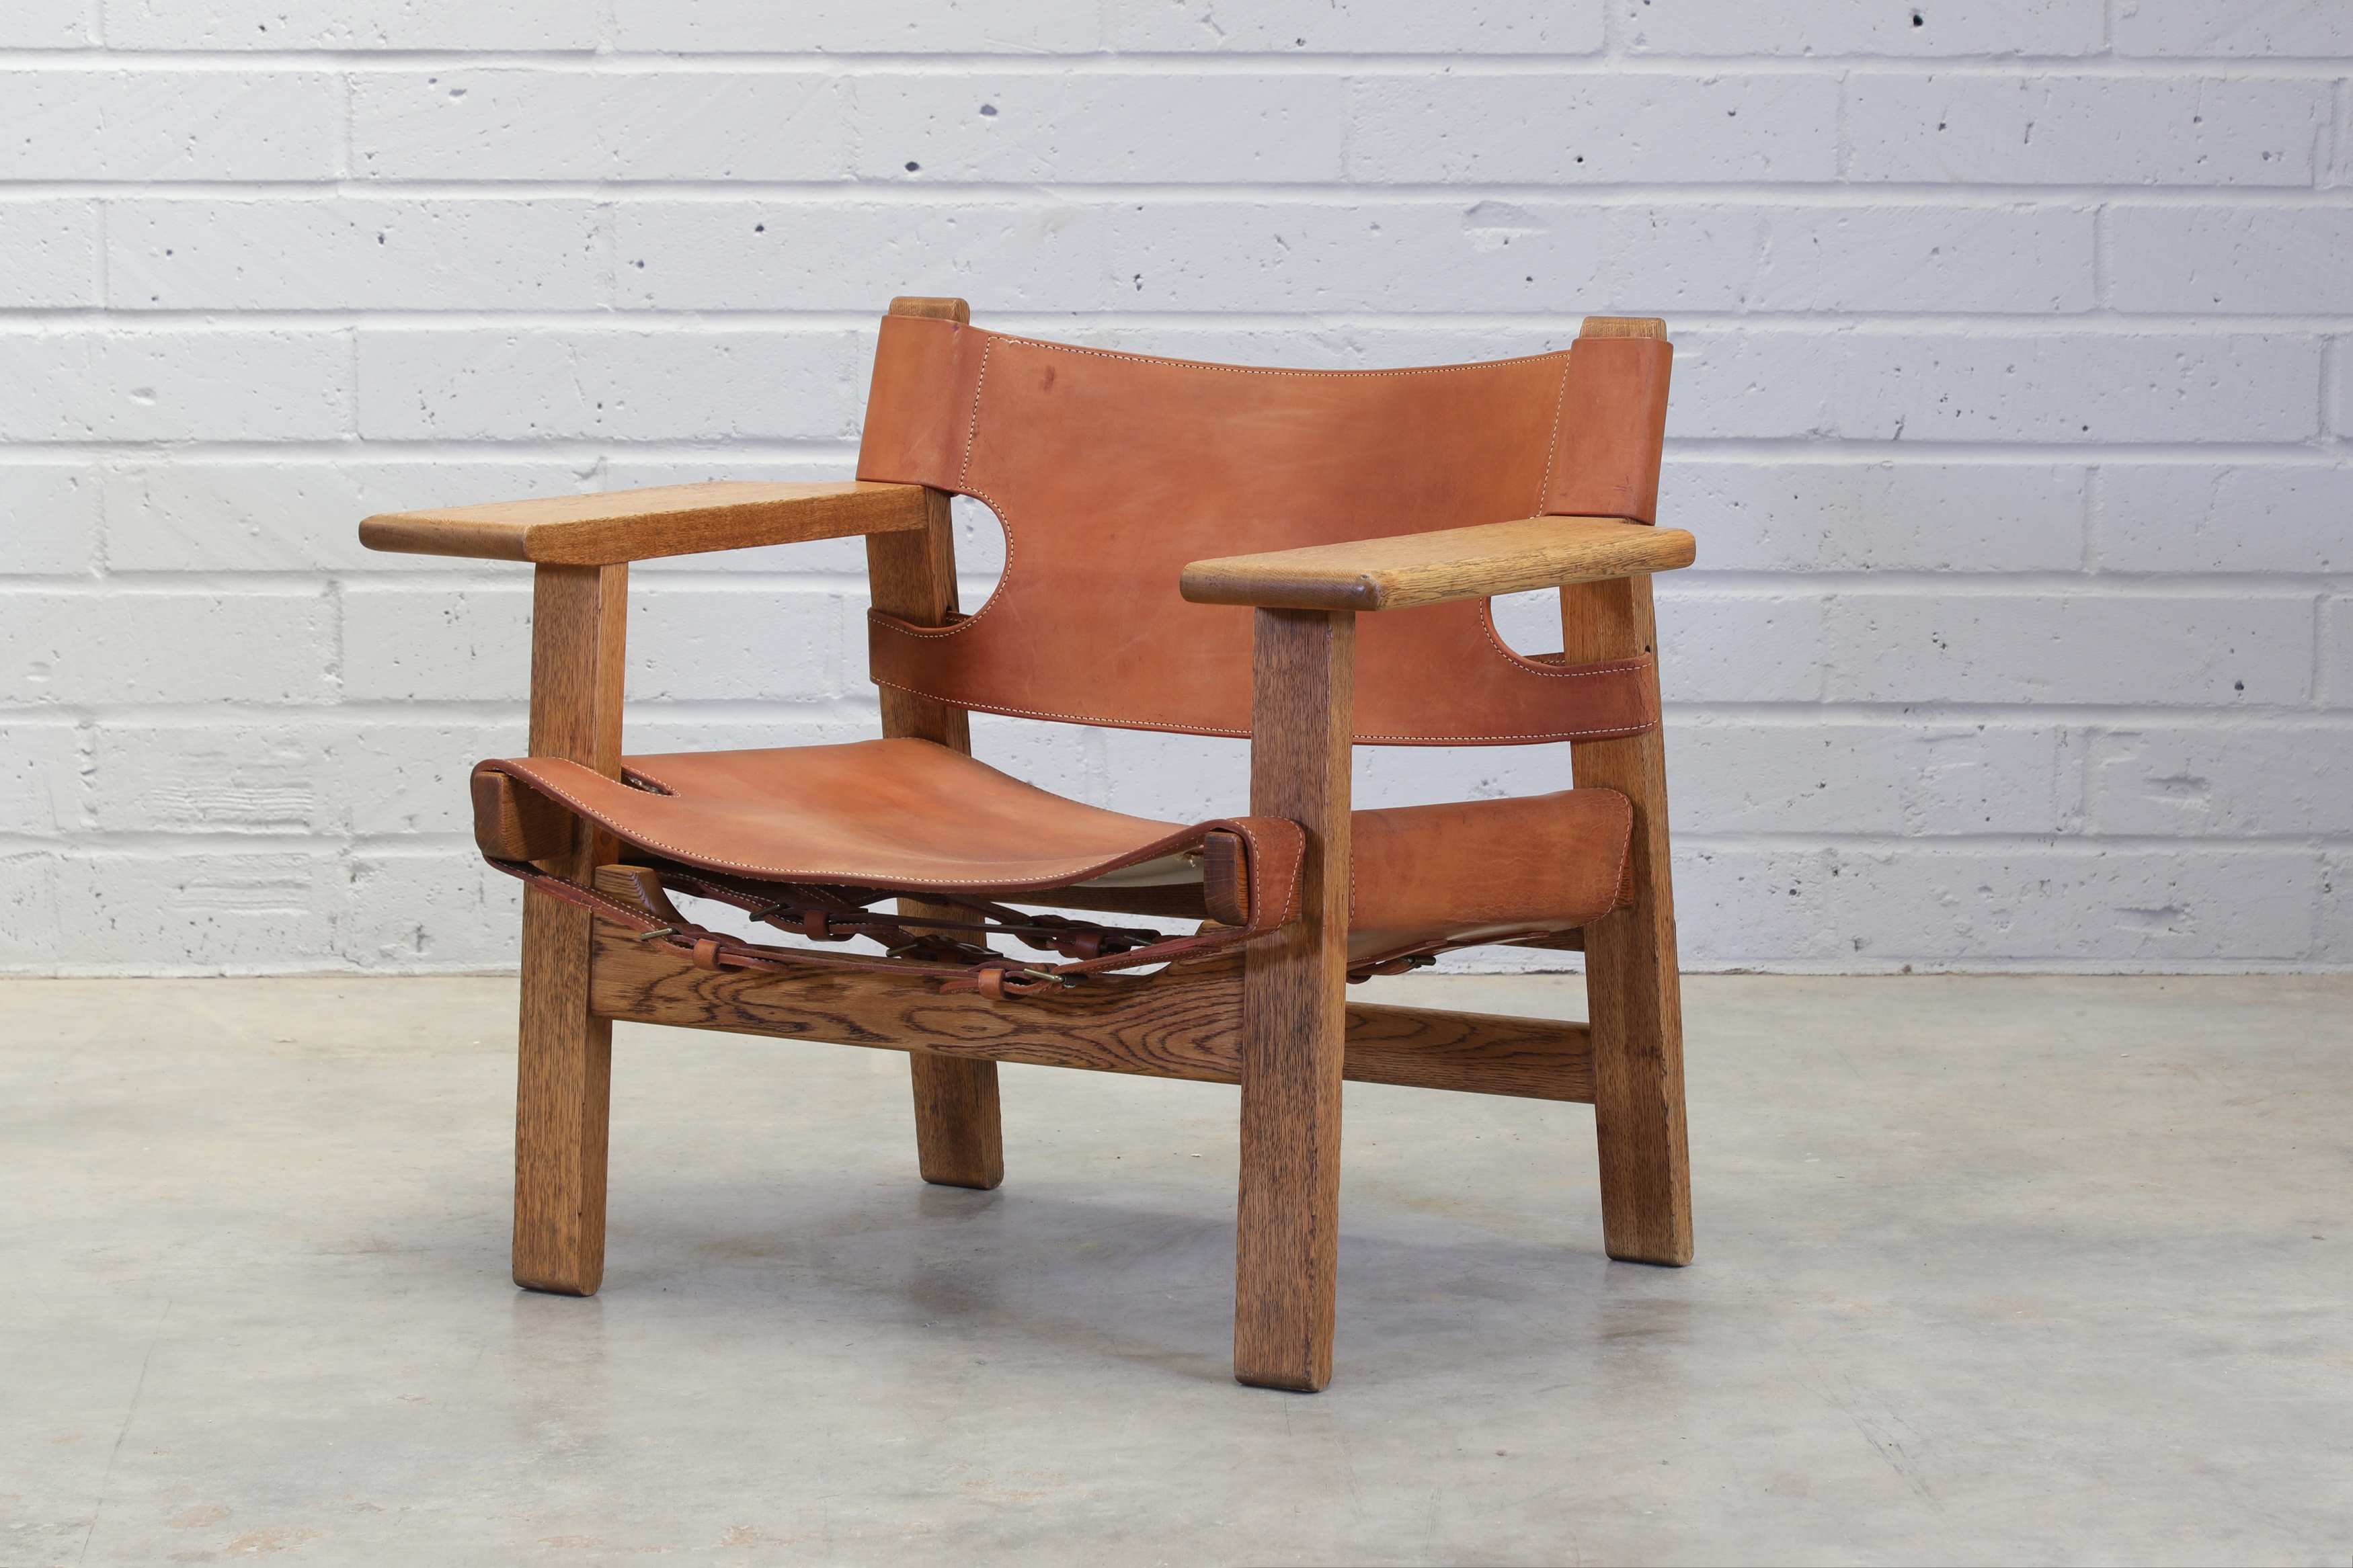 An oak 'Spanish Chair' (£1,500-2,000)